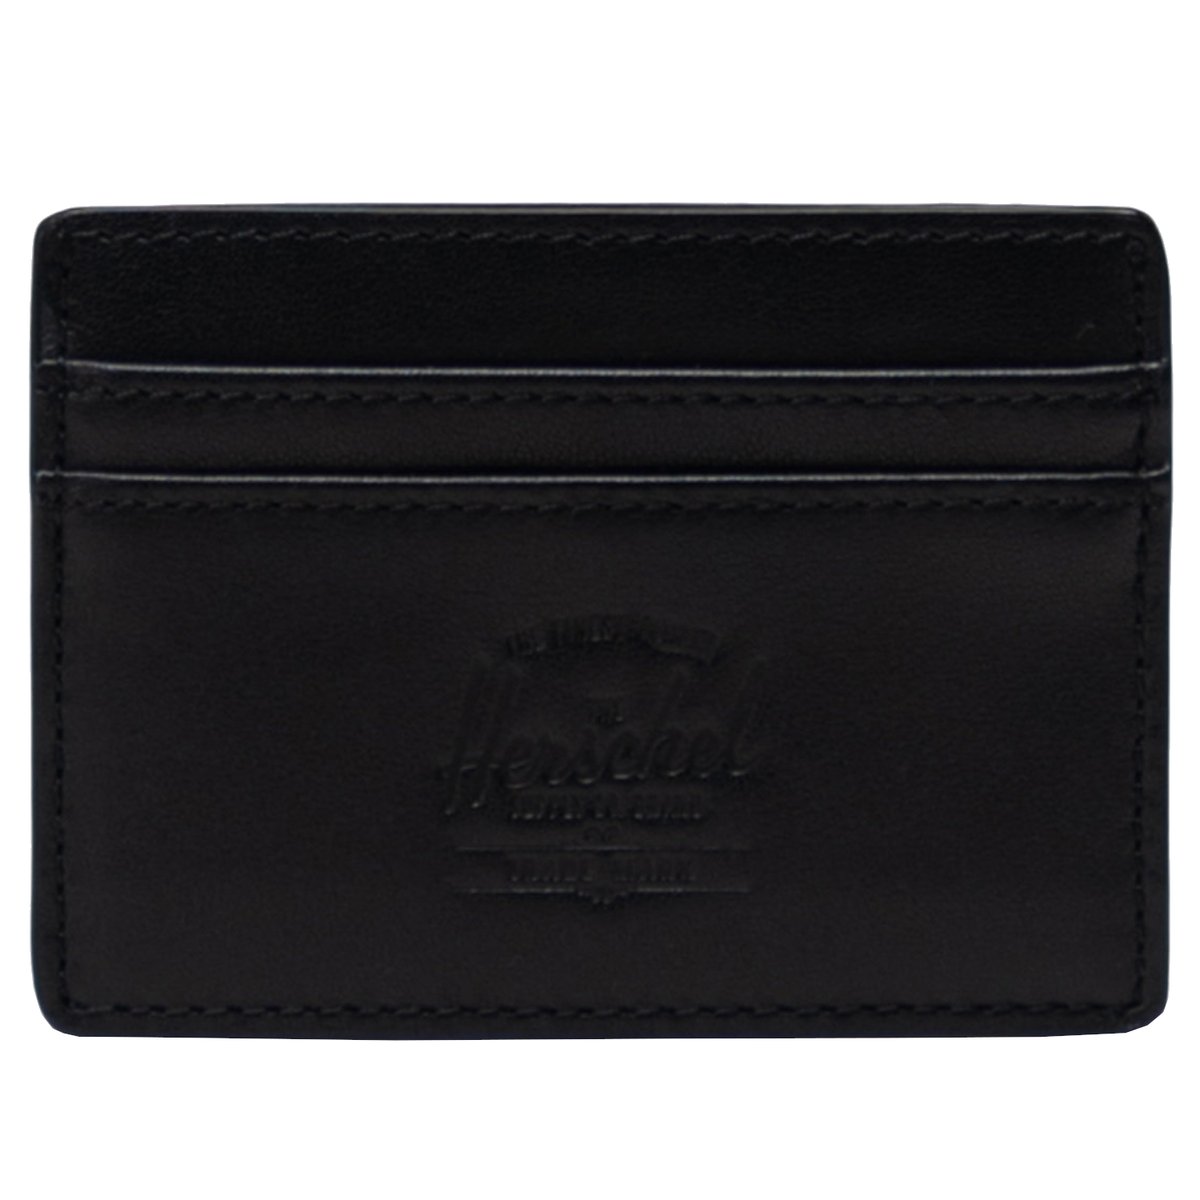 Zdjęcia - Portfel Herschel Charlie Leather RFID Wallet 11146-00001, Kobieta/Mężczyzna, Portf 